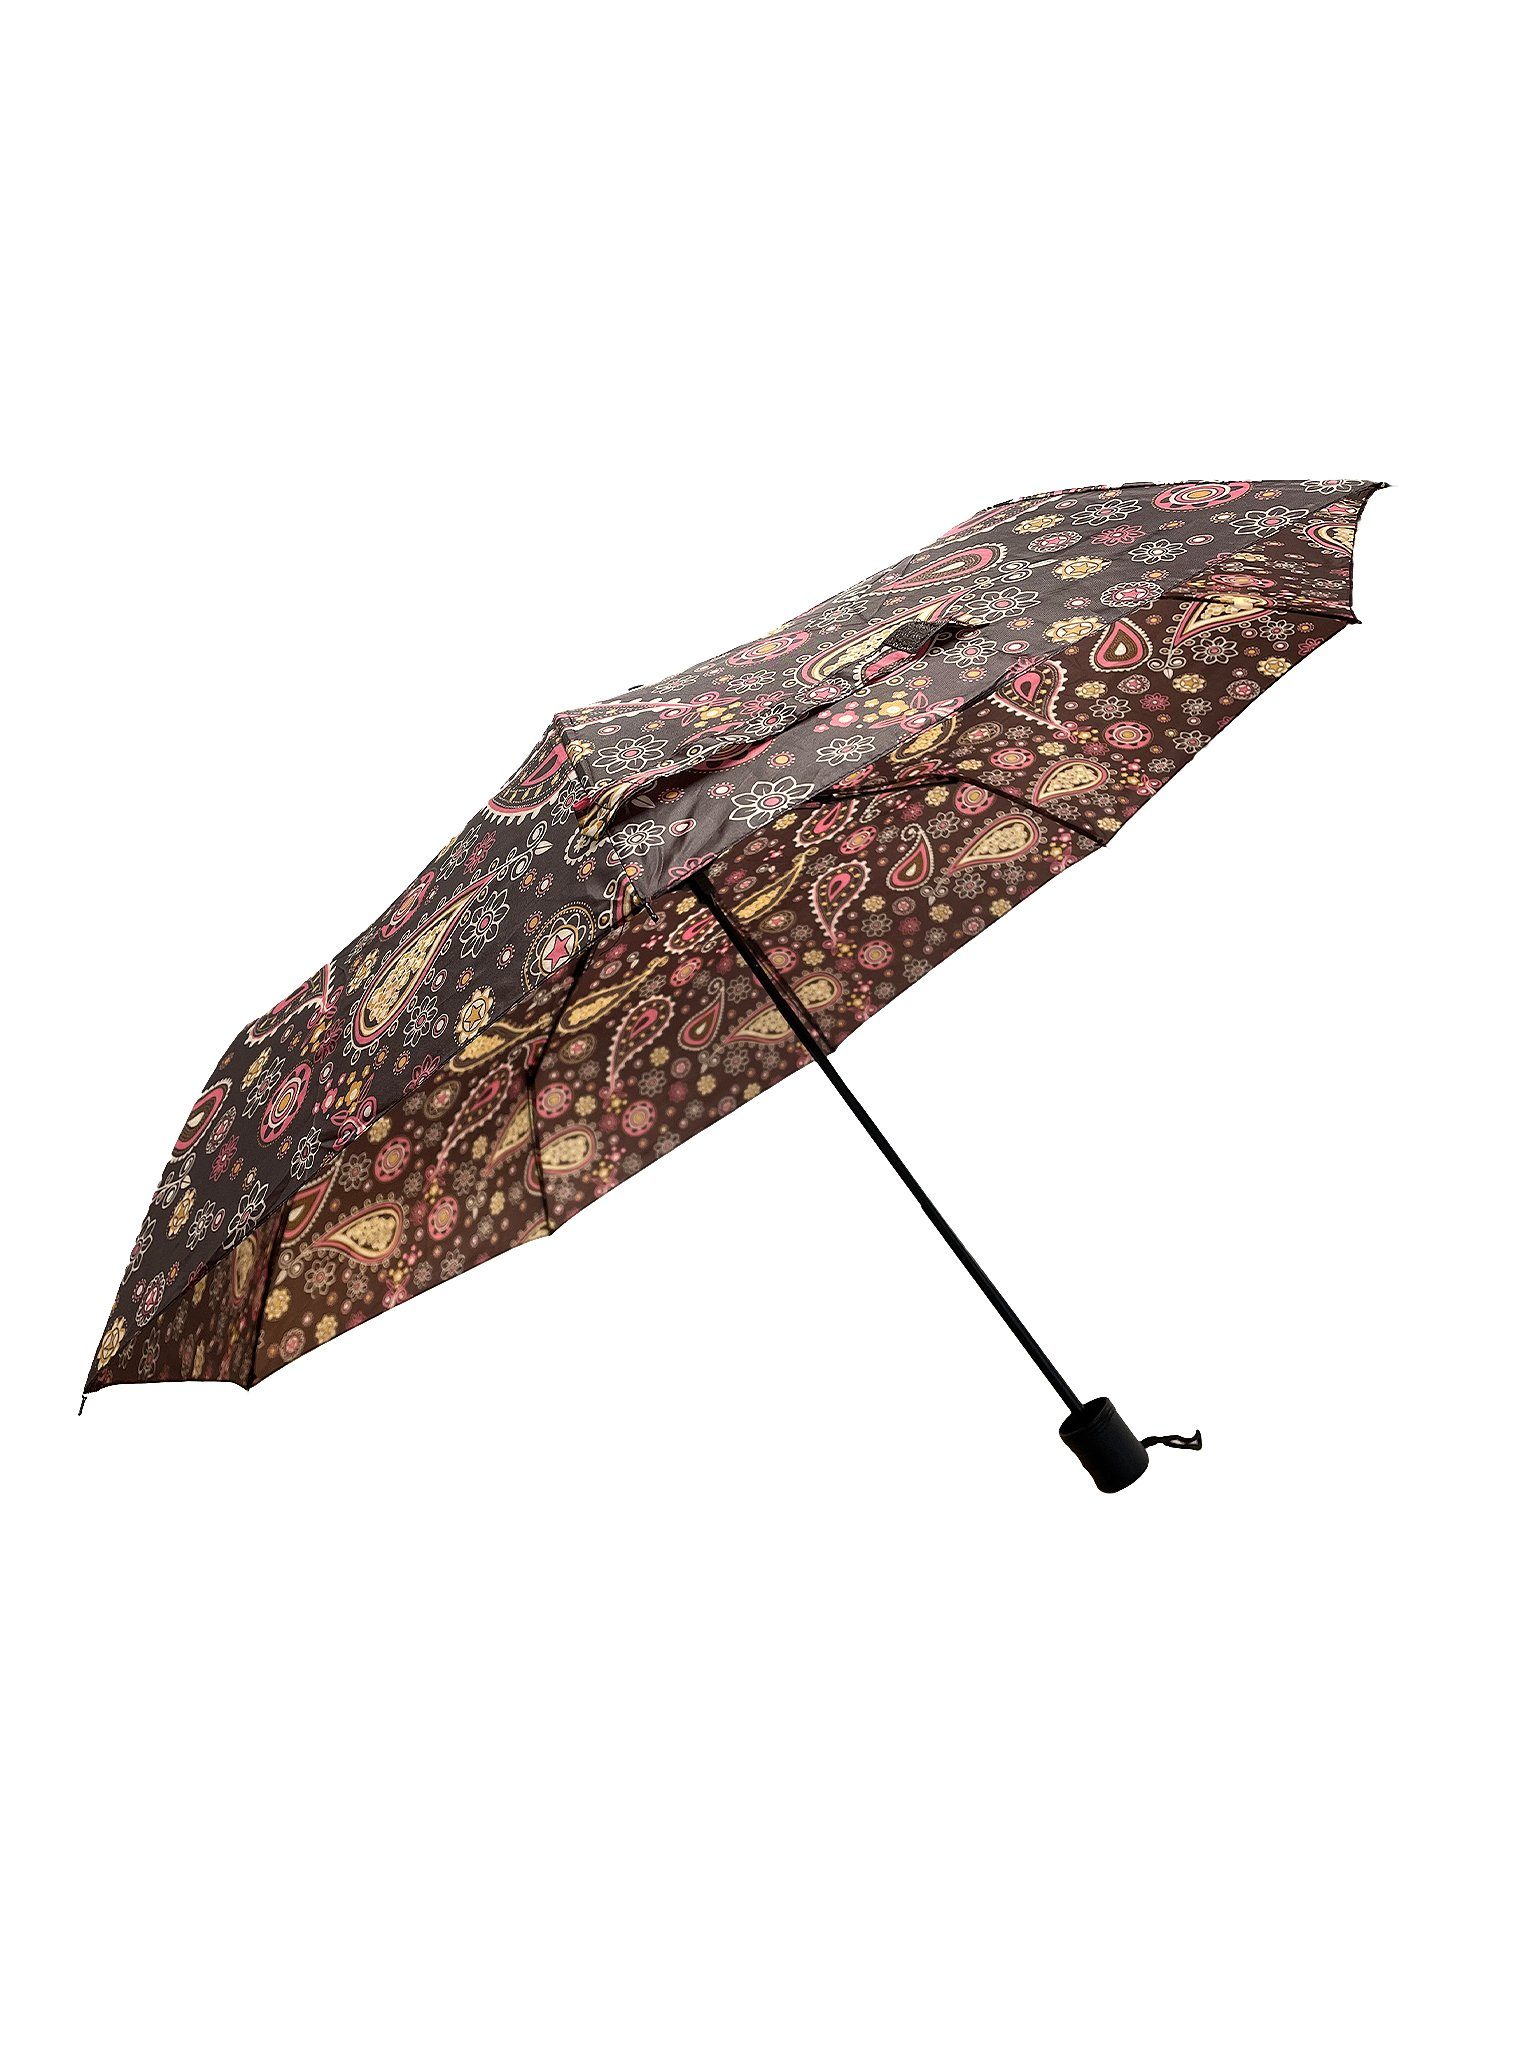 ANELY Taschenregenschirm Kleiner Regenschirm Gemustert Taschenschirm, Paris 6746 in Braun